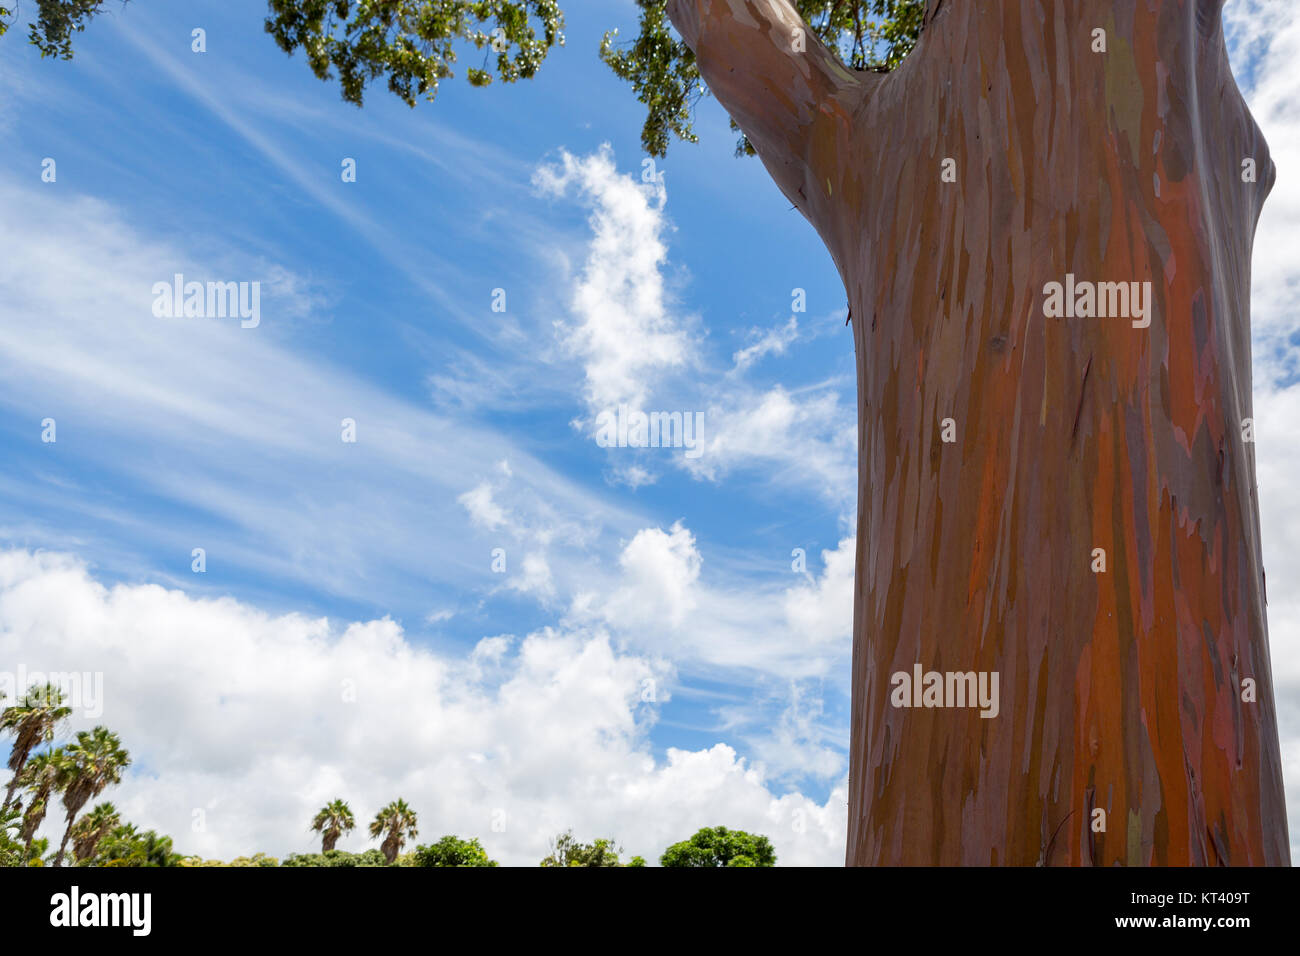 Stamm eines Eukalyptus deglupta Baum in Oahu, Hawaii zeigt die typische  Schälen der Rinde, grünes Holz, unter denen Änderungen Farben durch eine ra  Stockfotografie - Alamy